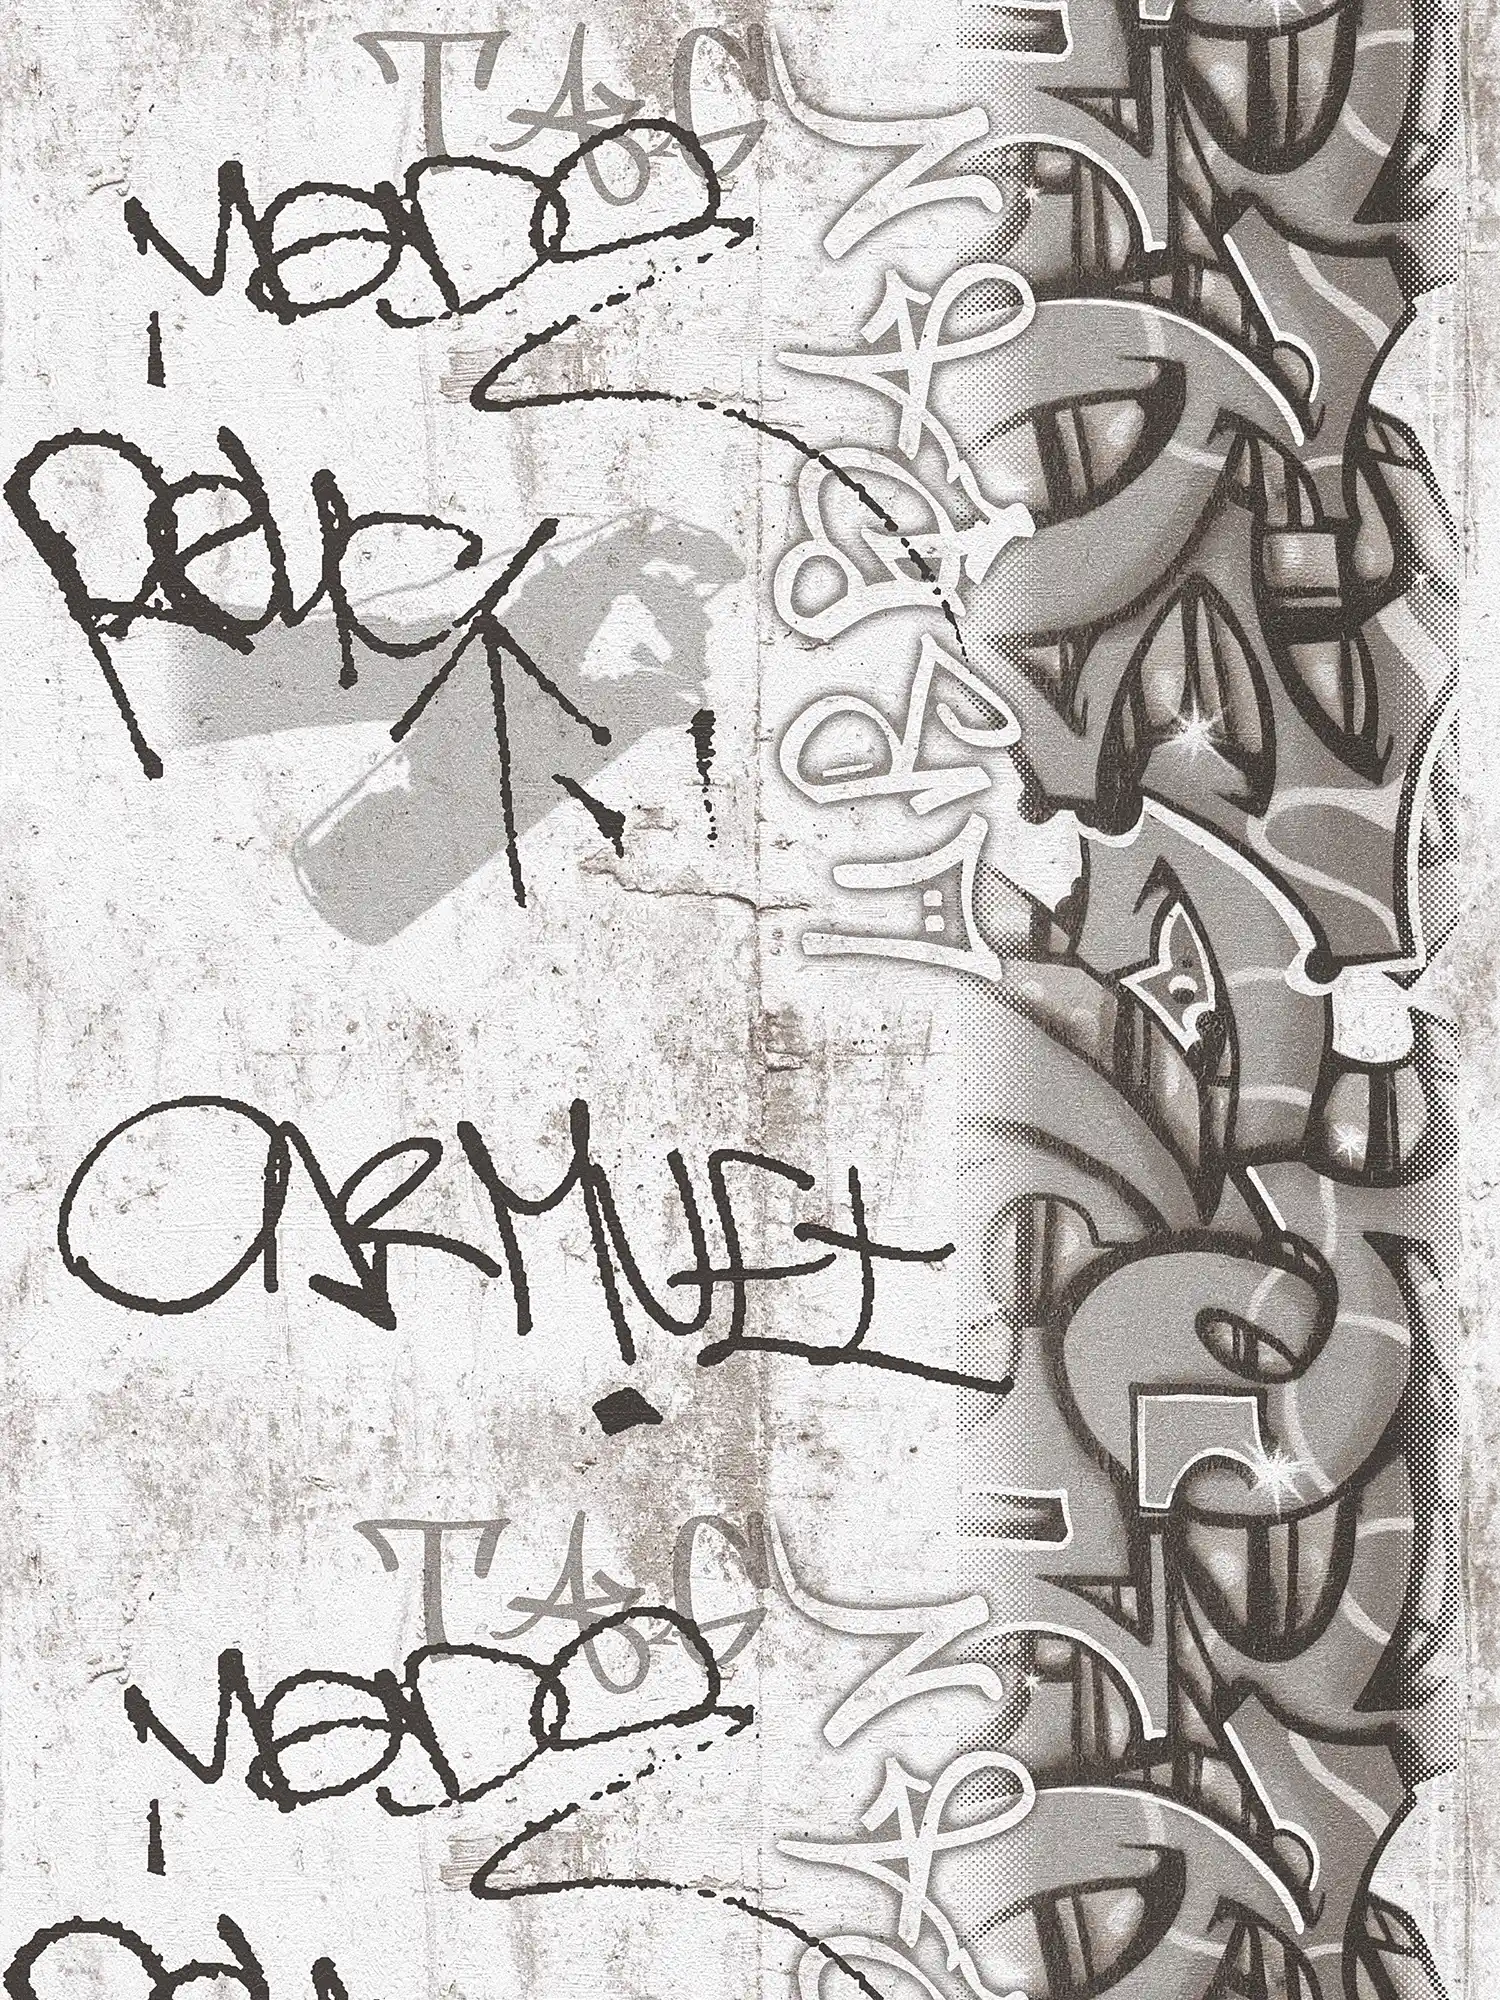             Papier peint Graffiti pour chambre d'enfant - gris, noir
        